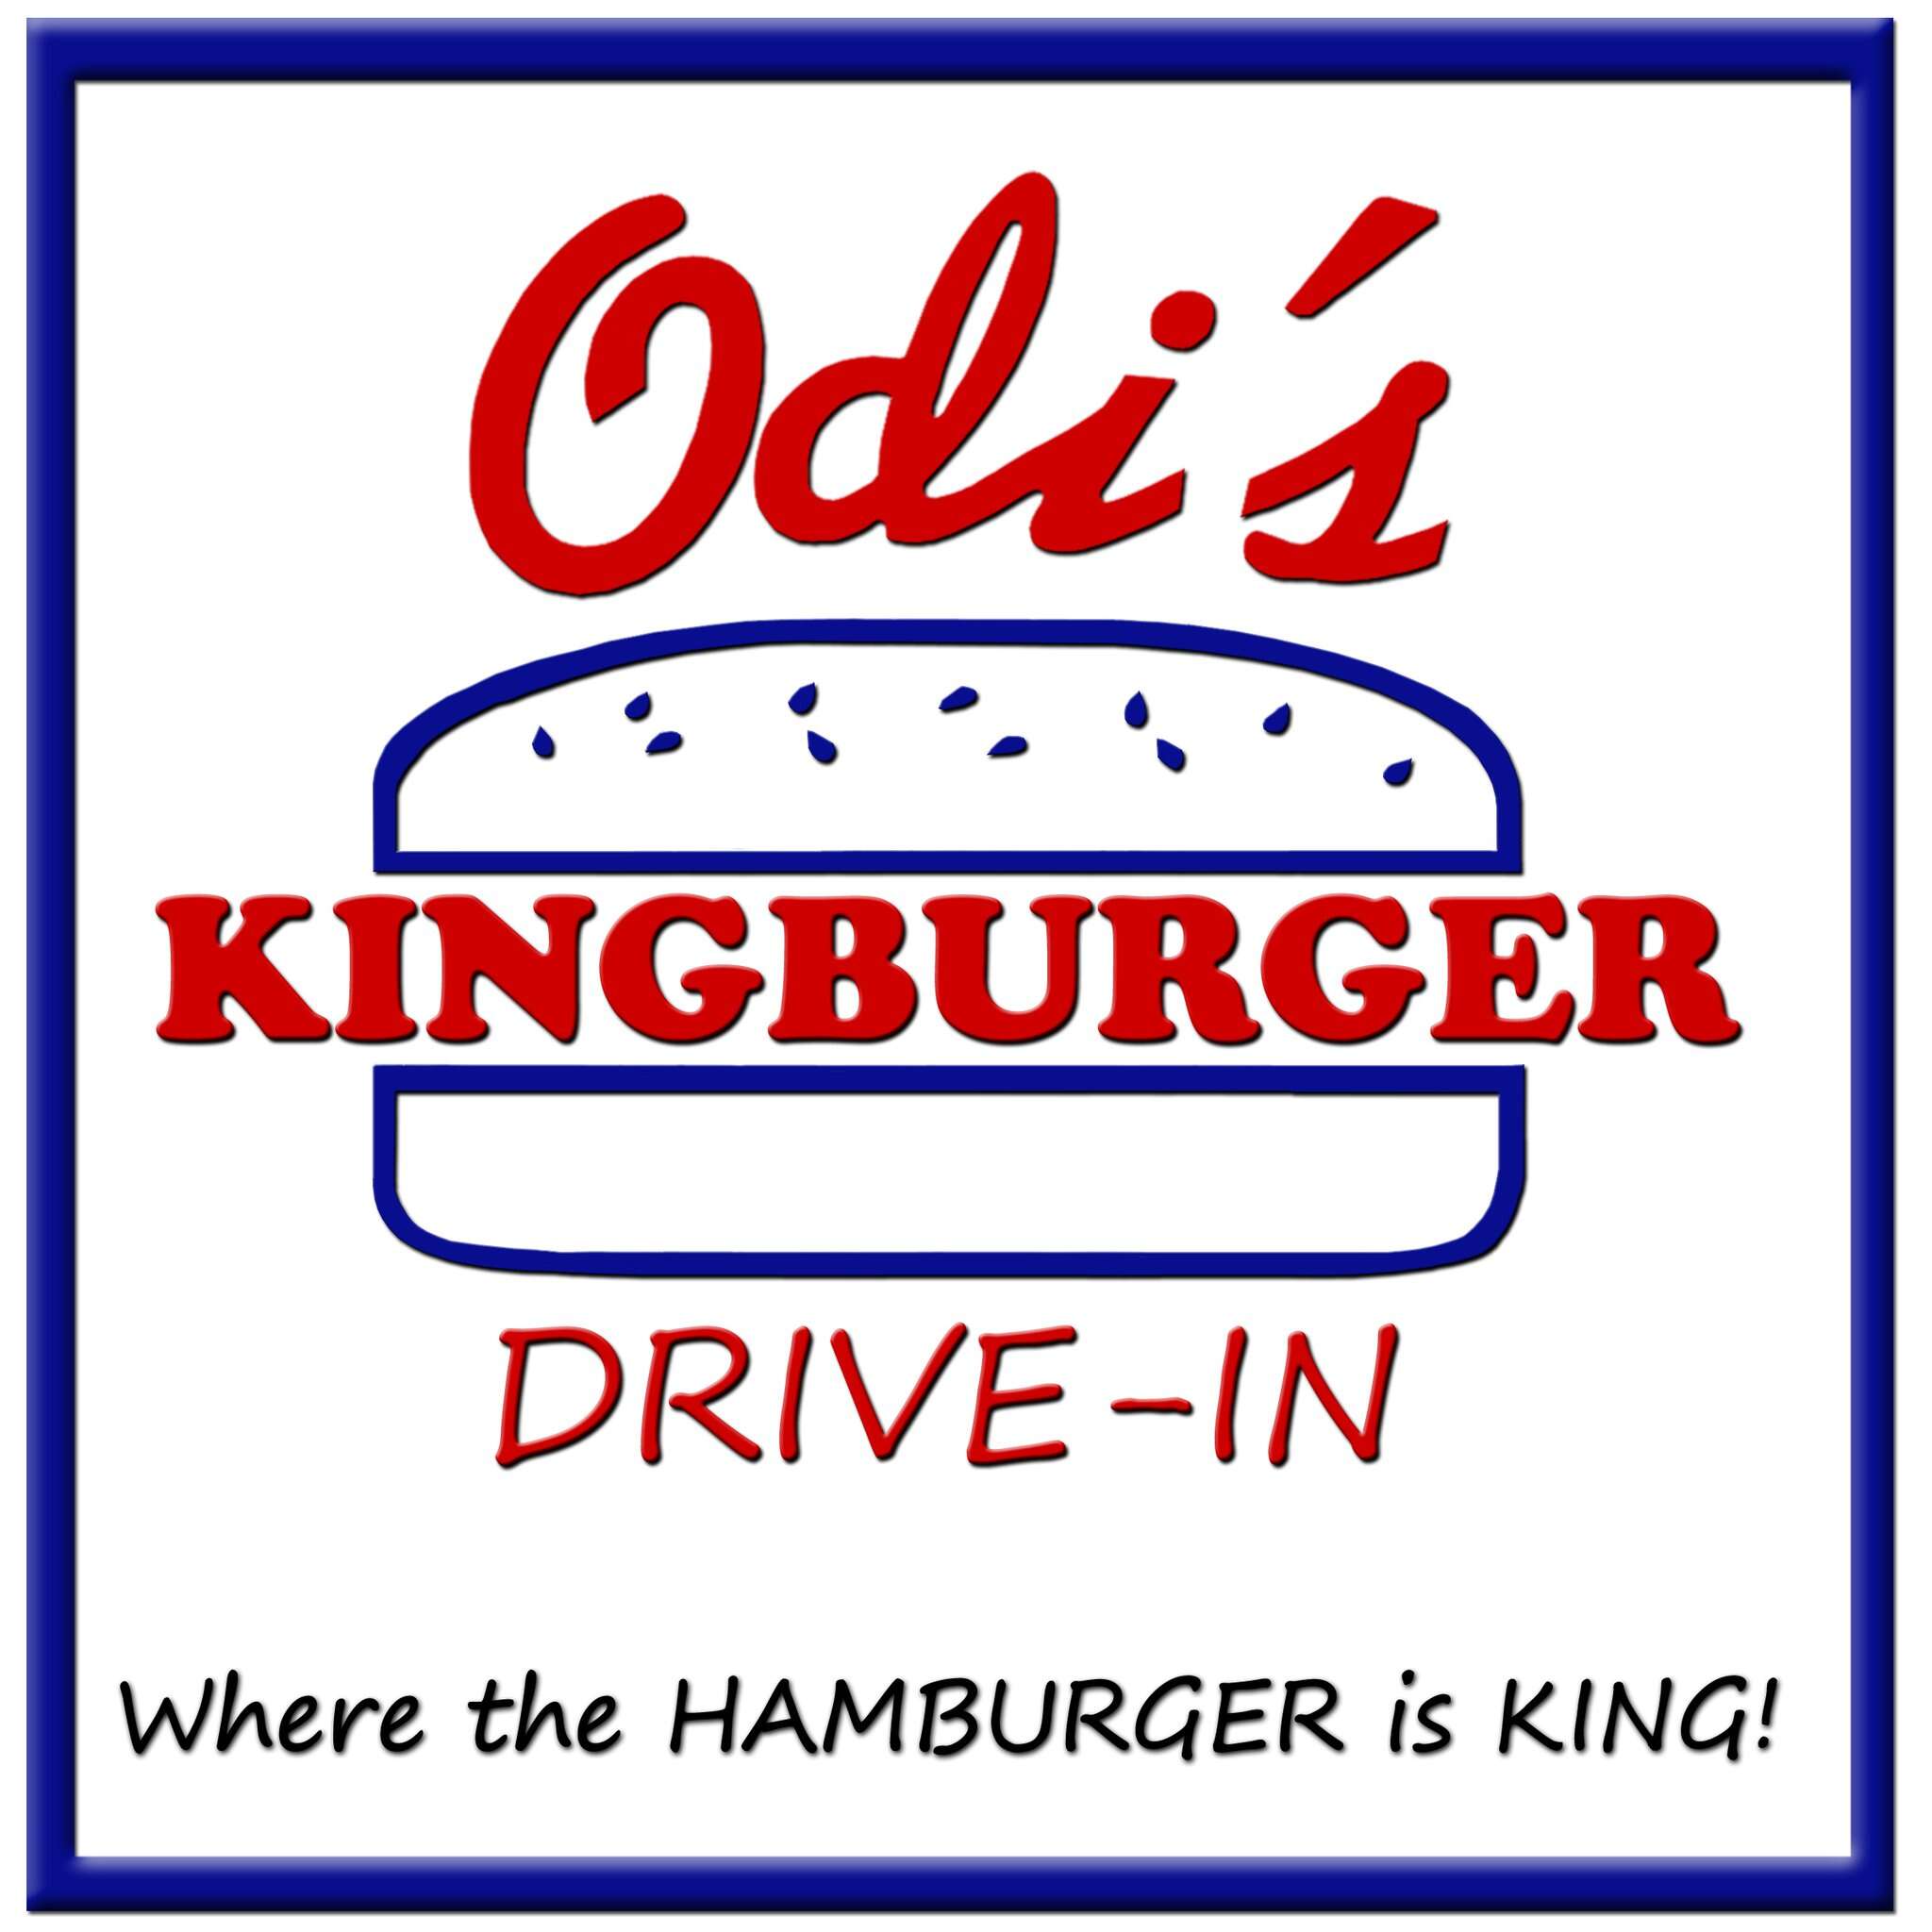 Odi's Kingburger Drive-In